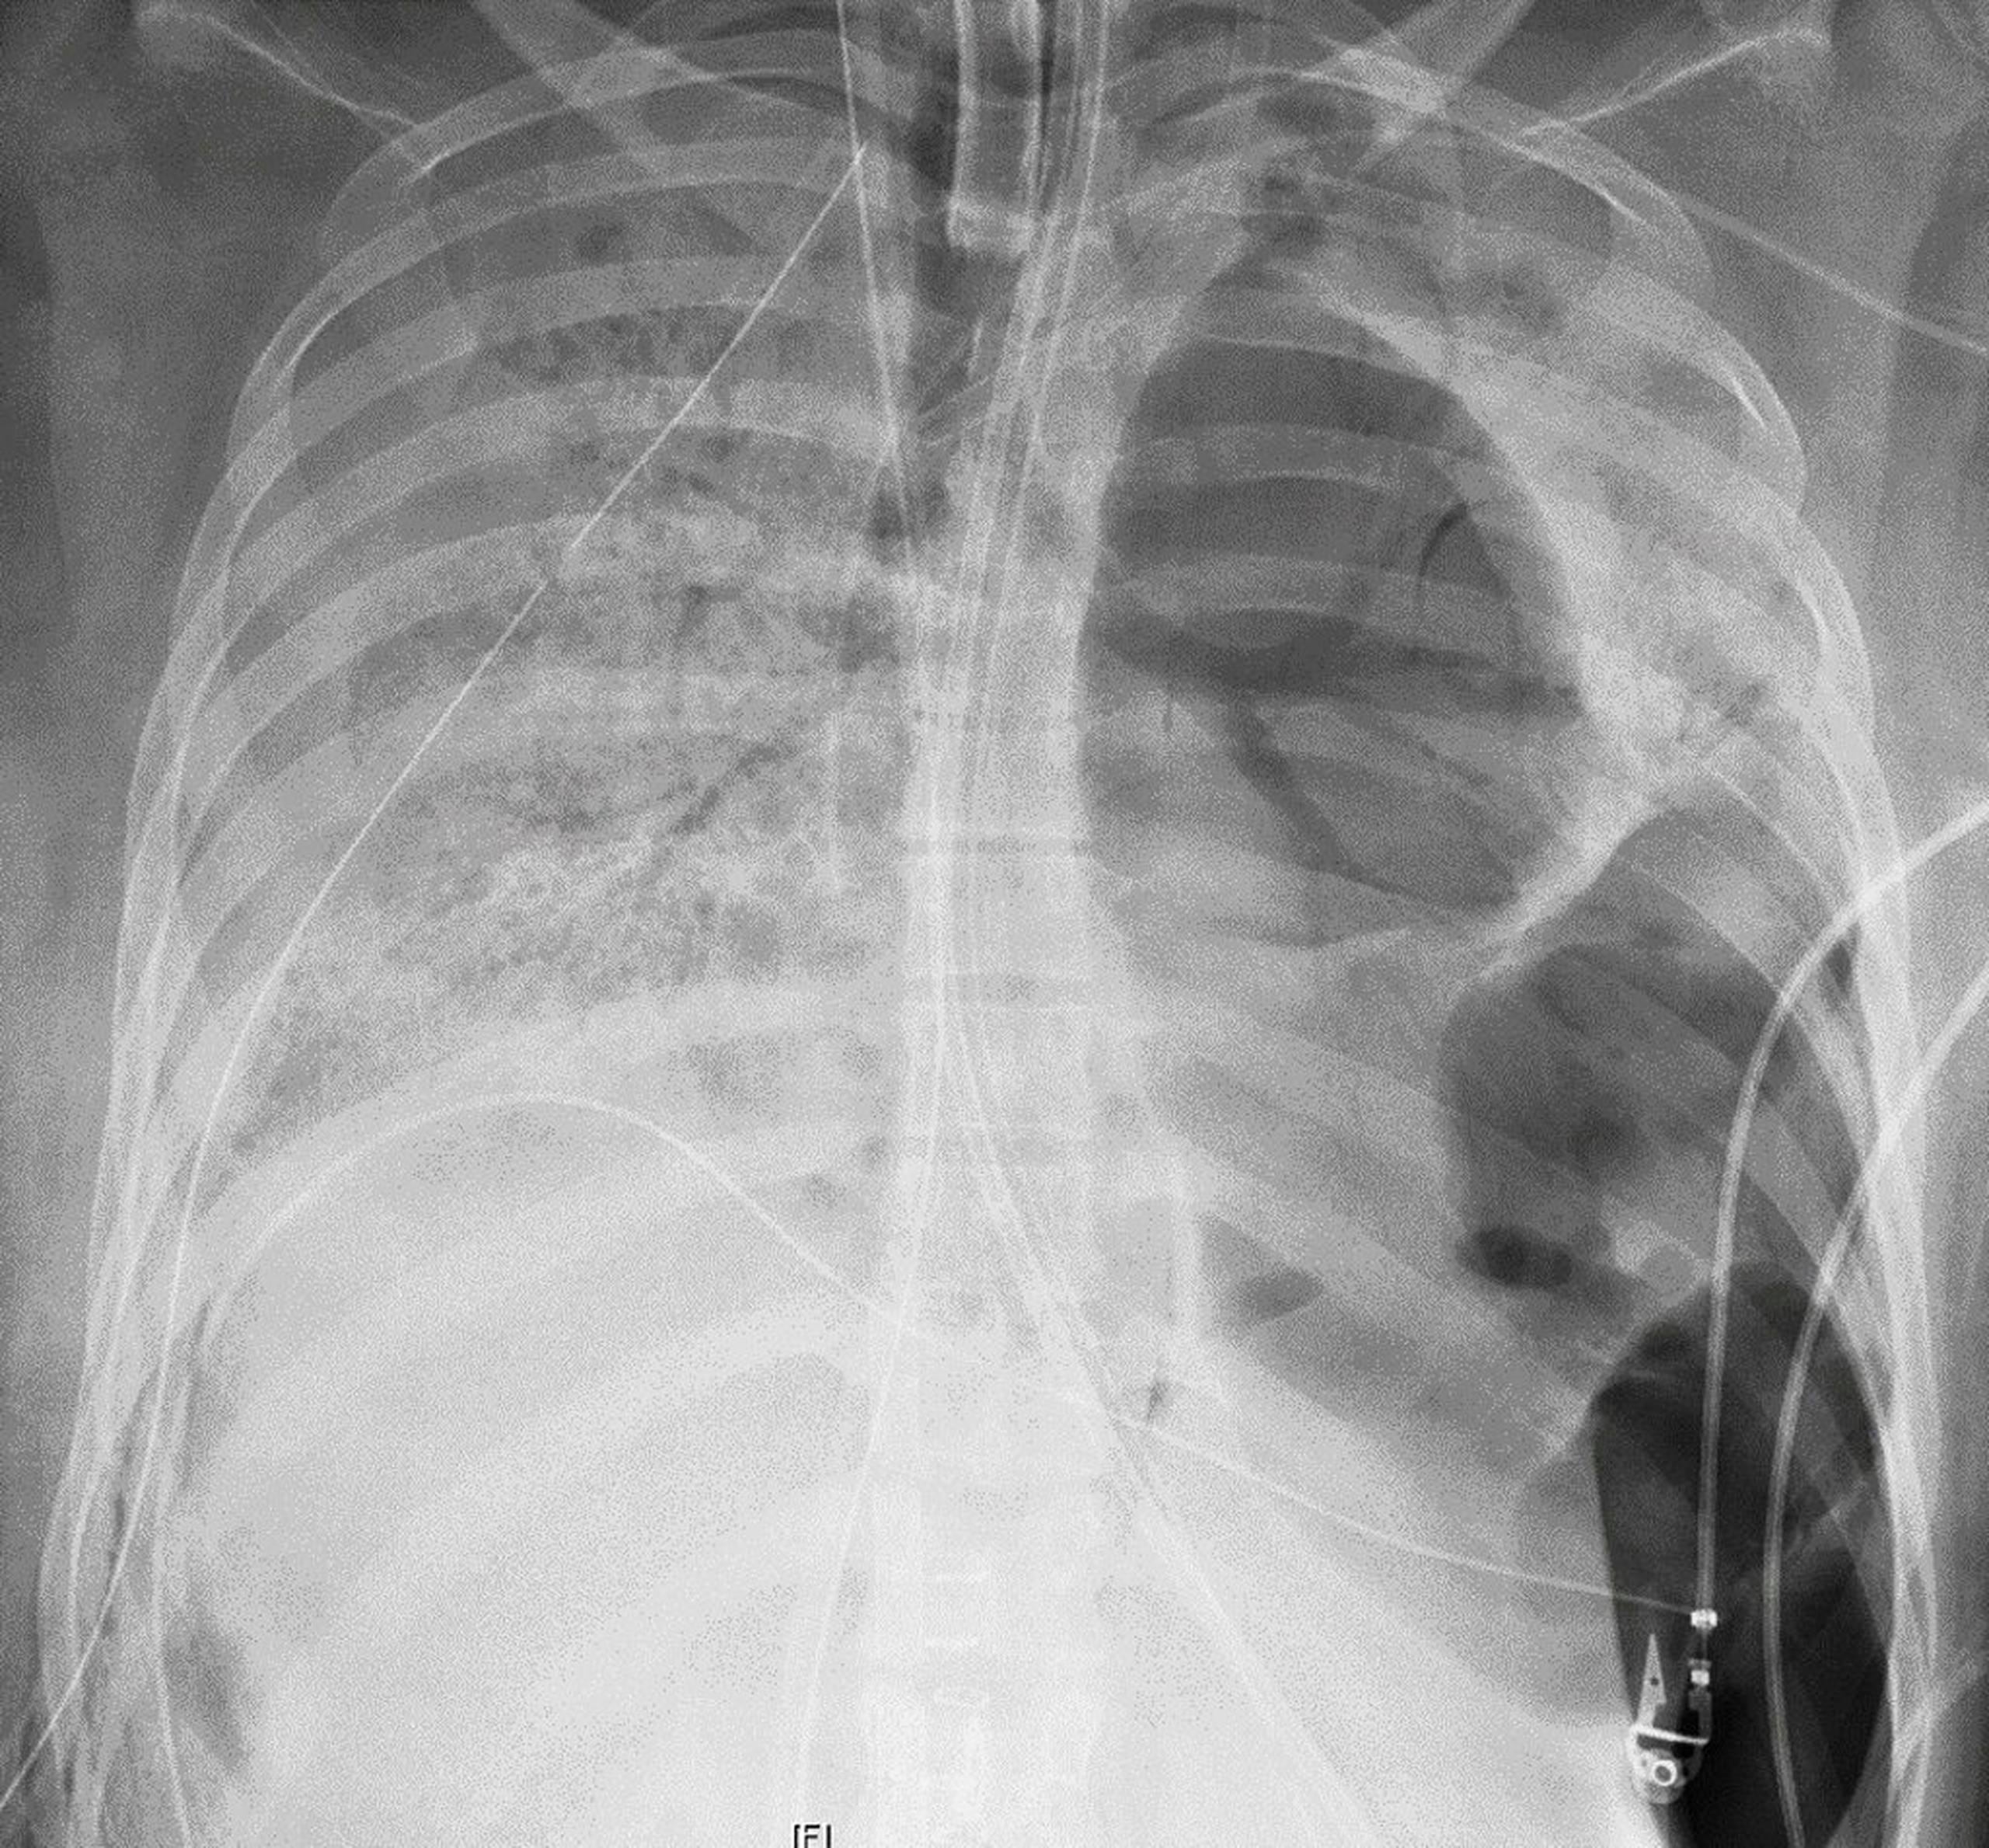 Imagen de rayos X de los pulmones de la paciente antes de recibir el trasplante en el Hospital Northwestern Memorial.